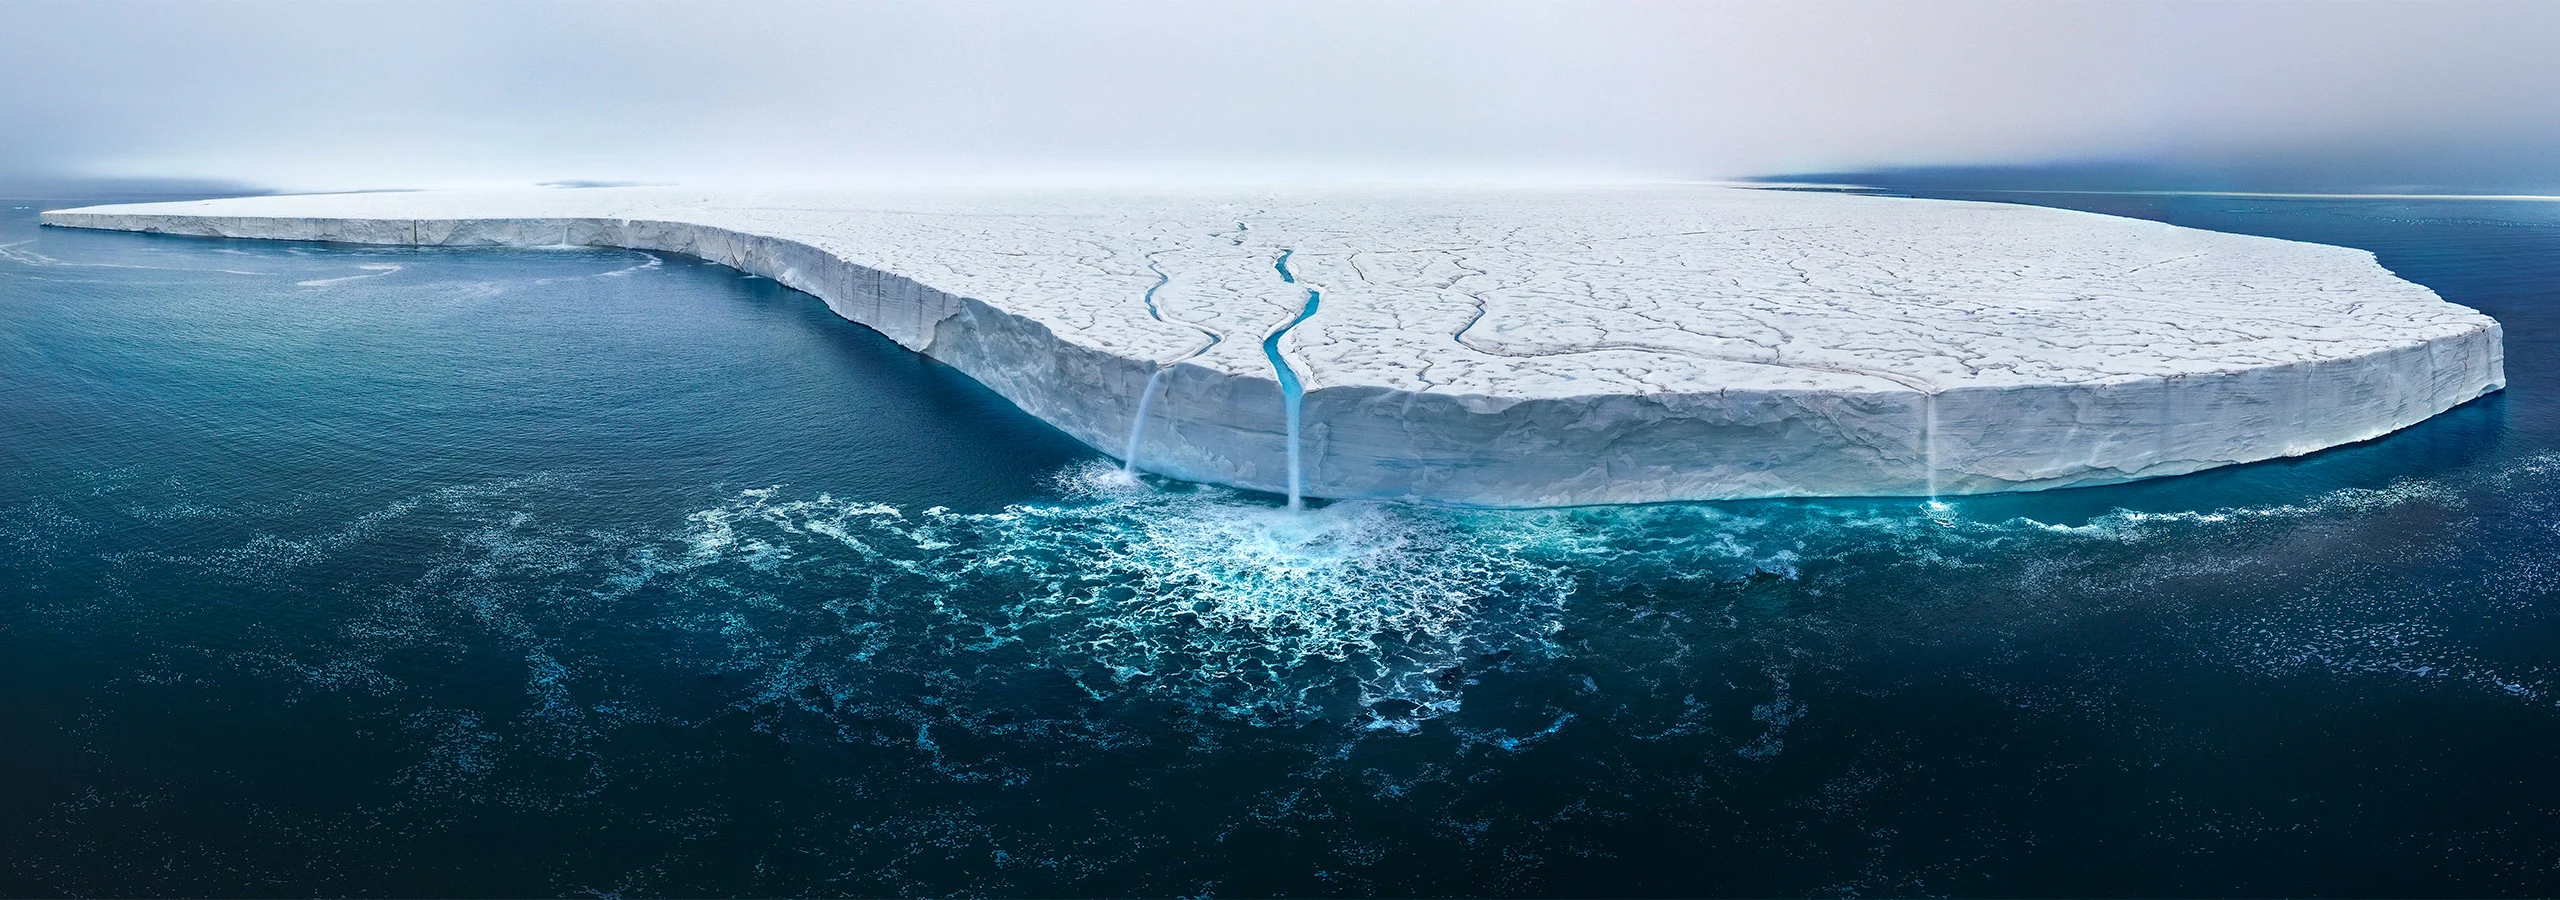 Deshielo Impactante en la Isla Ártica de Nordaustlandet